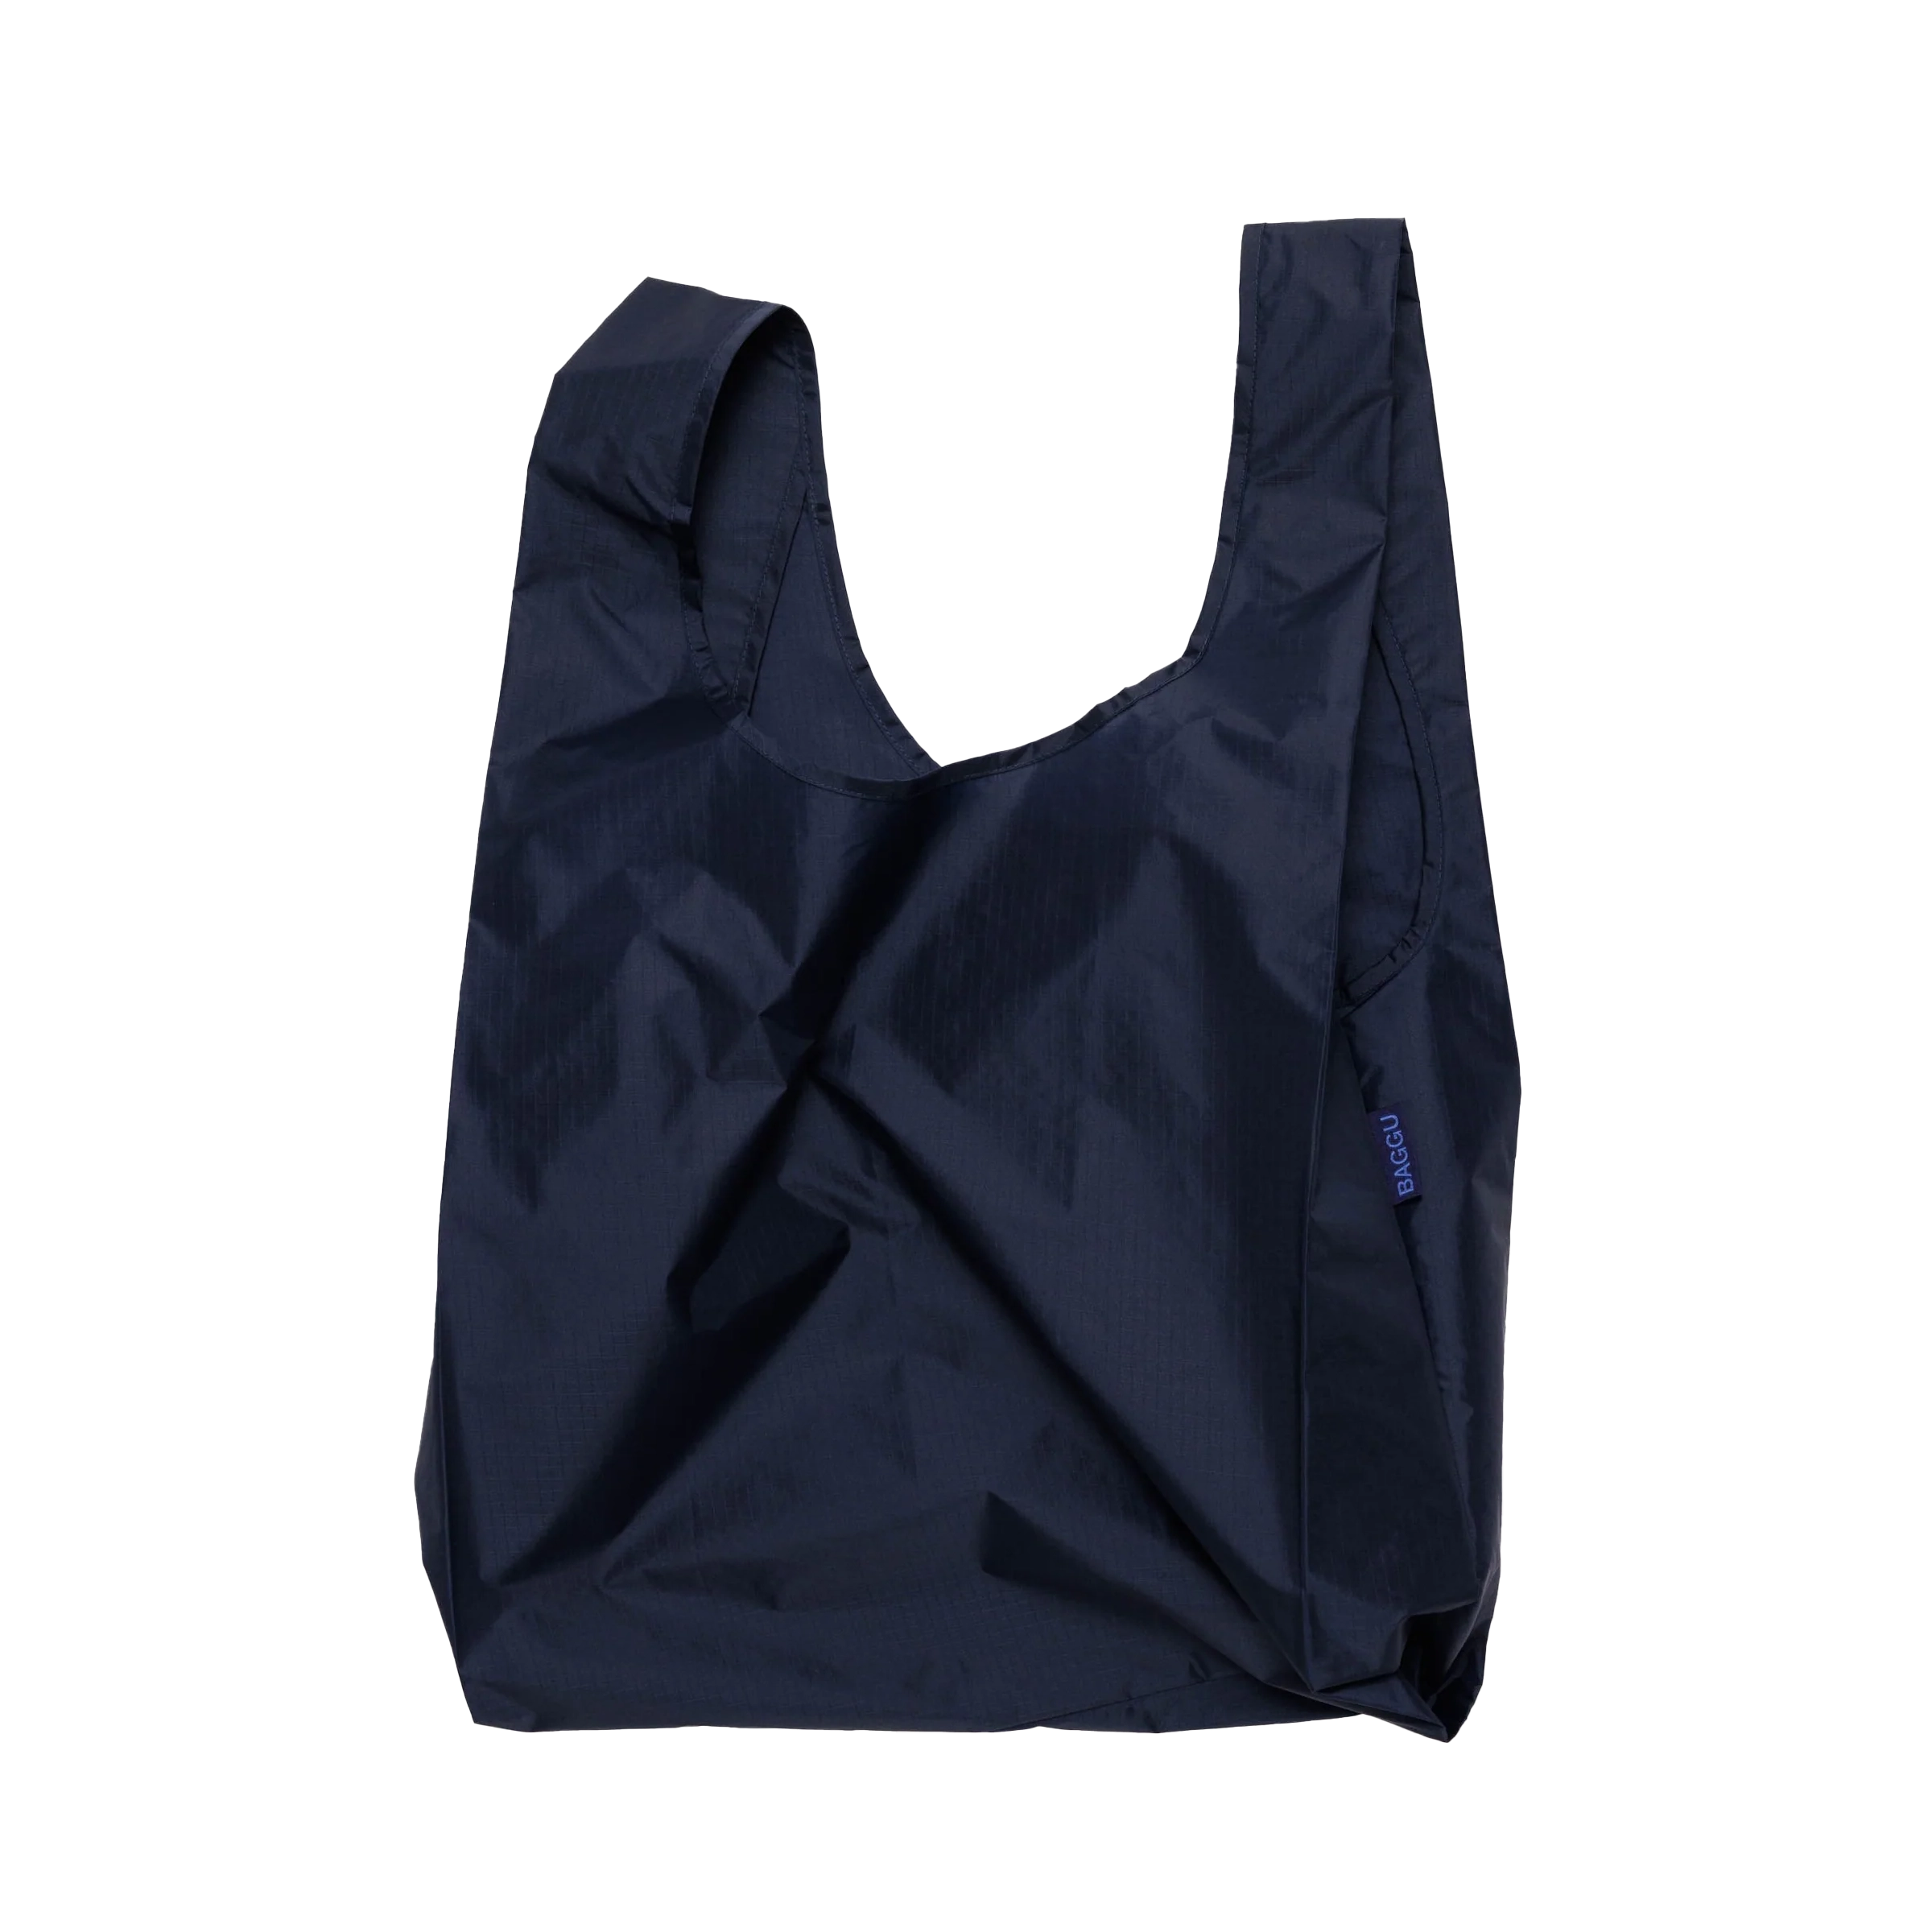 BAGGU Standard Bag - Amethyst